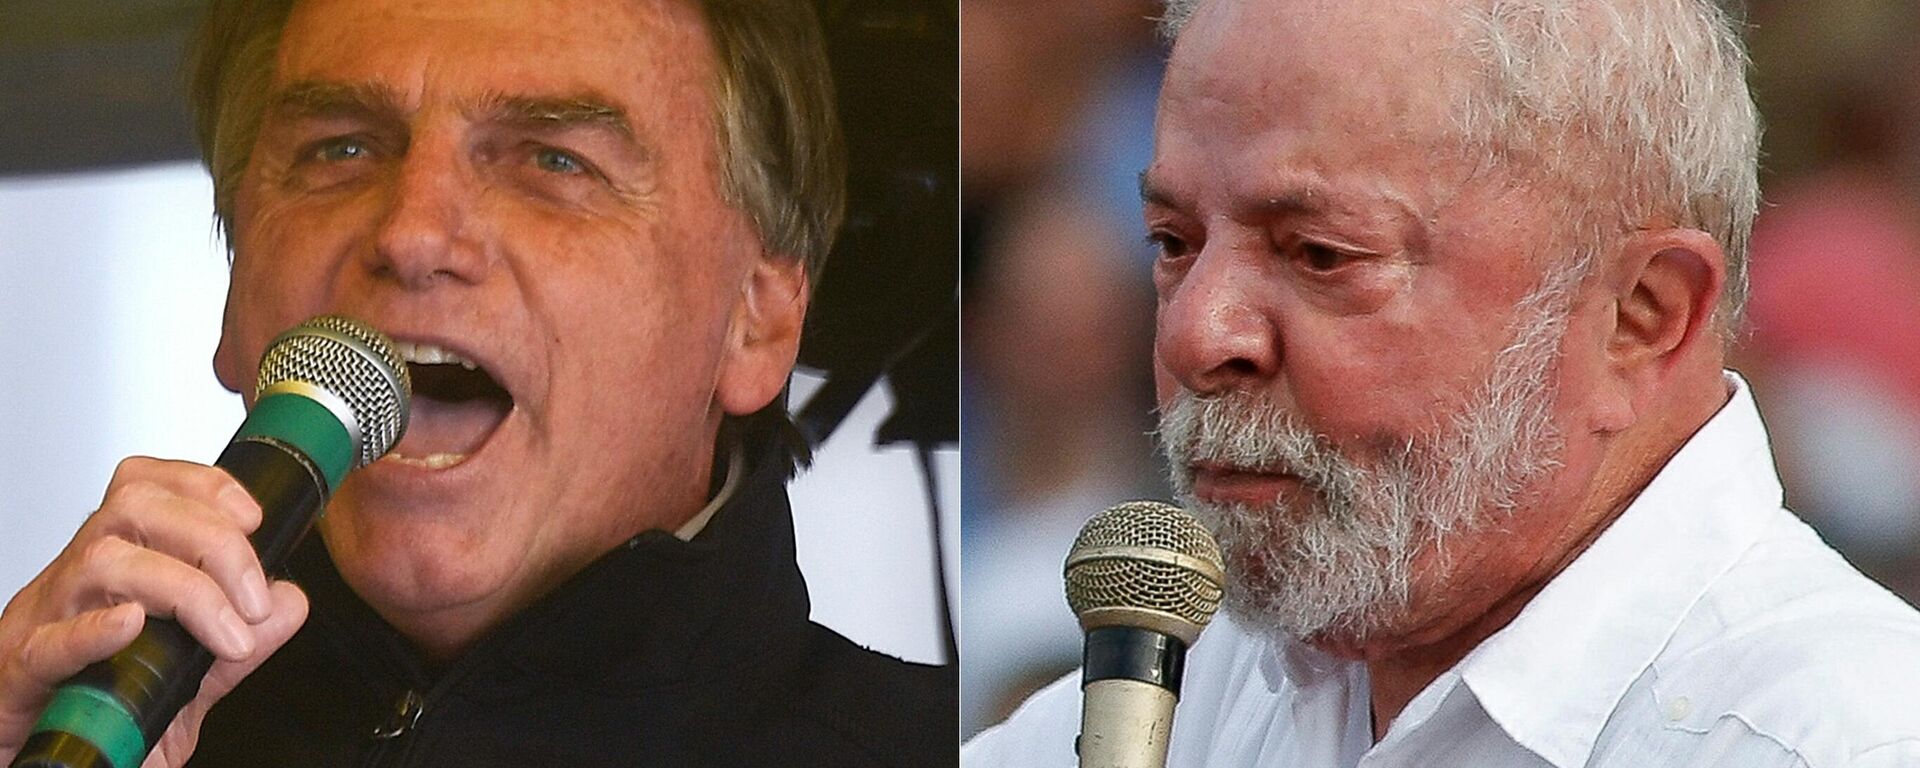 O presidente Jair Bolsonaro (PL) e o ex-presidente Luiz Inácio Lula da Silva (PT) - Sputnik Brasil, 1920, 09.09.2022